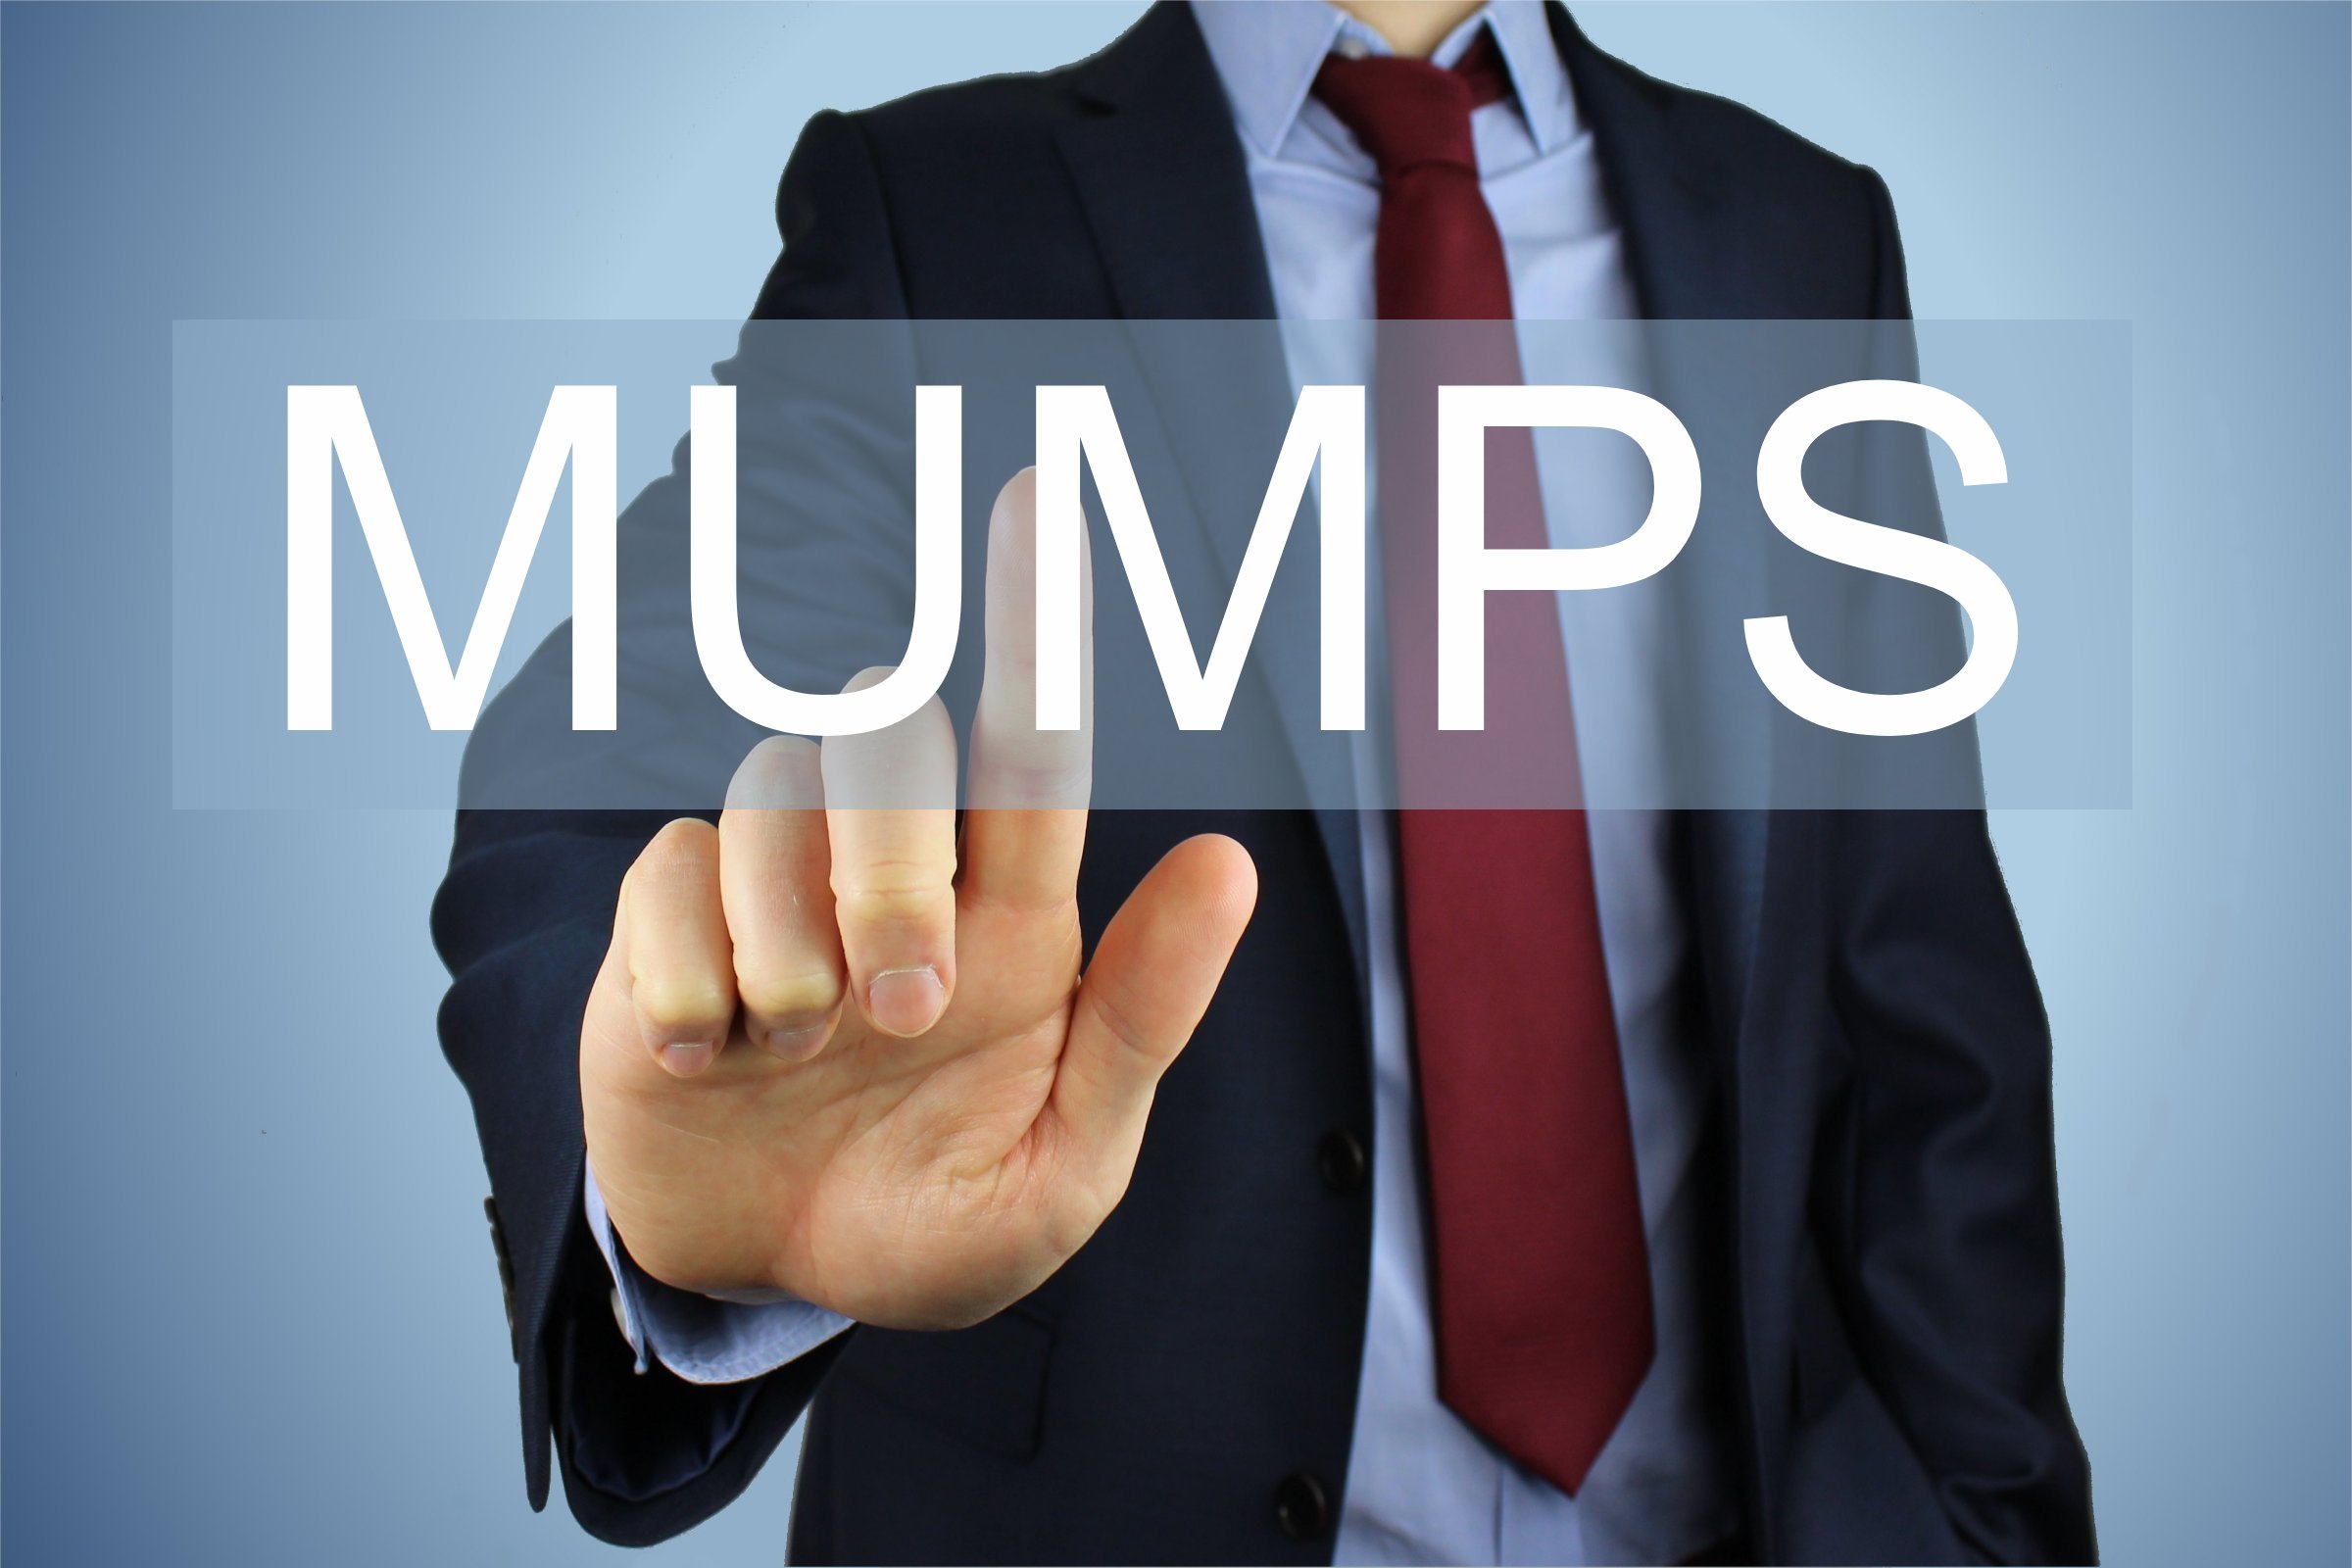 mumps